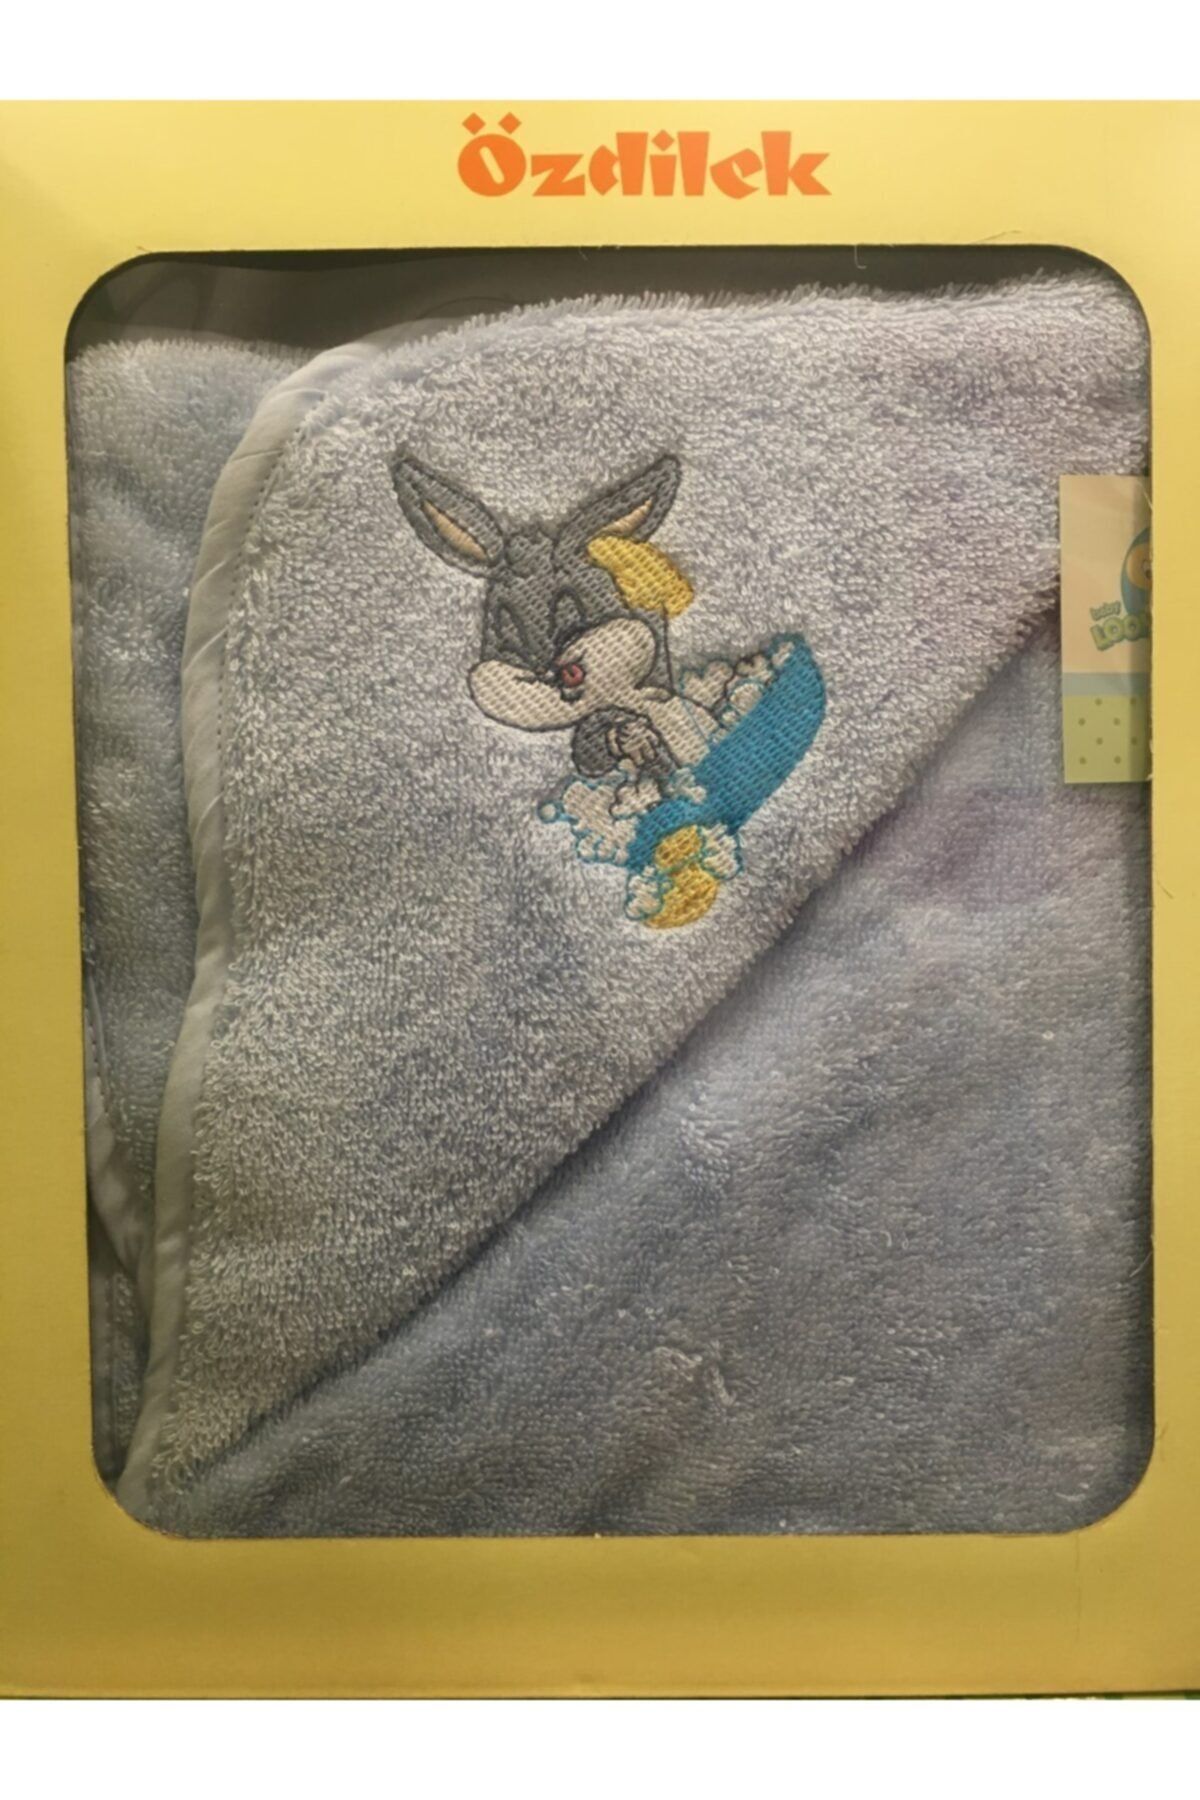 Özdilek Bugs Bunny Nakışlı Bambu Bebek Yenidoğan Havlusu Mavi 8697353256738